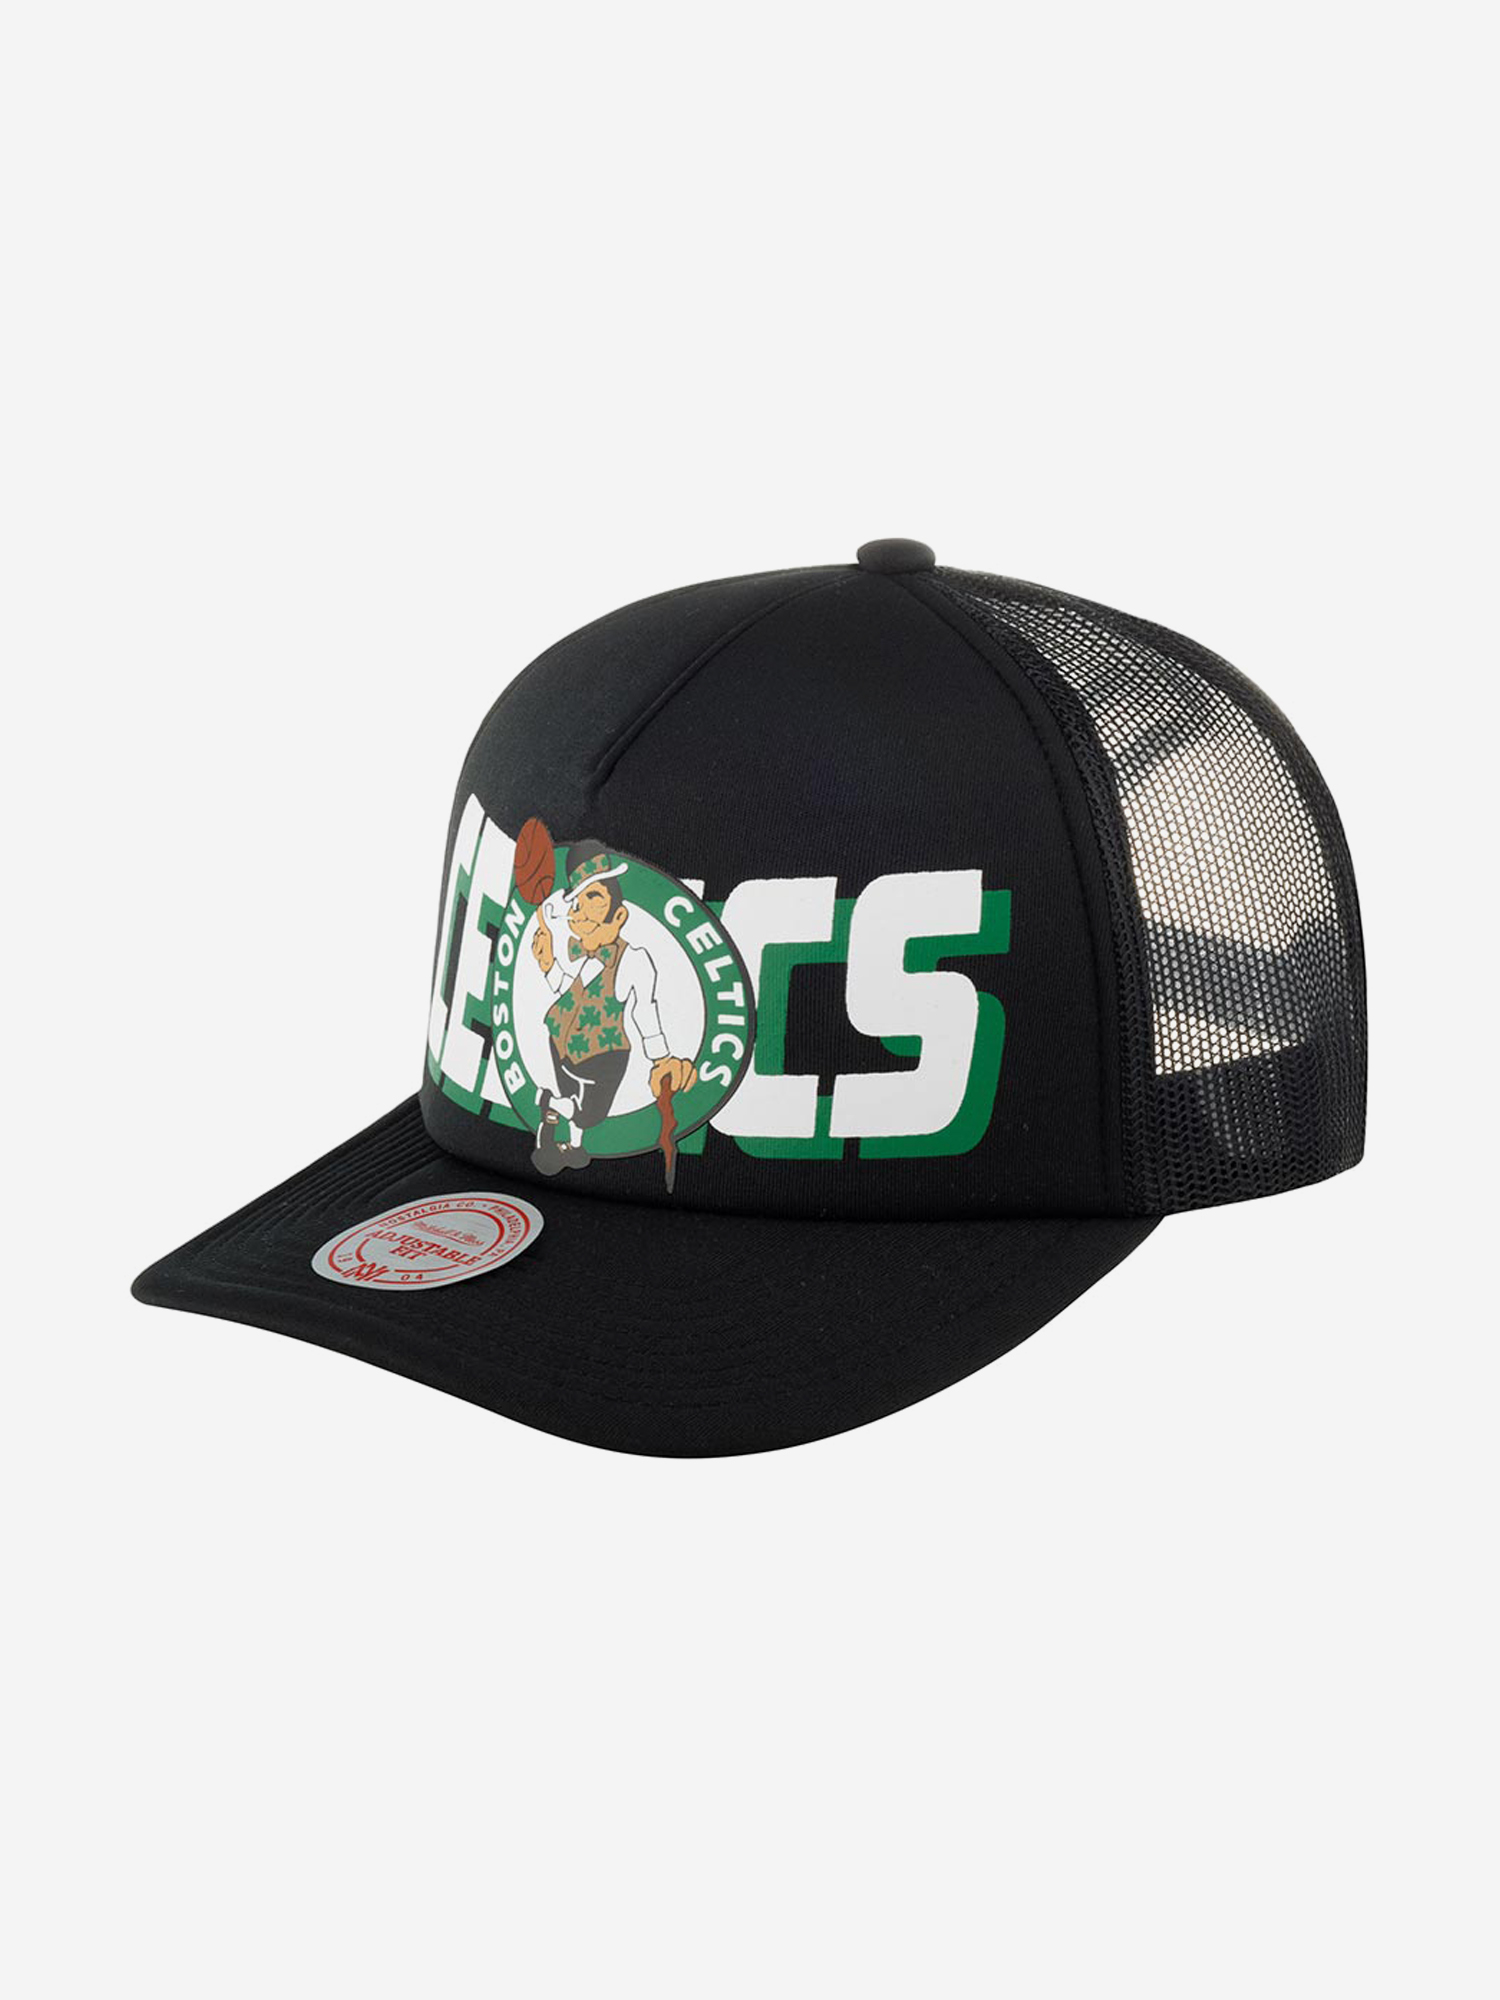 Бейсболка с сеточкой MITCHELL NESS HHSS5345-BCEYYPPPBLCK Boston Celtics NBA (черный), Черный